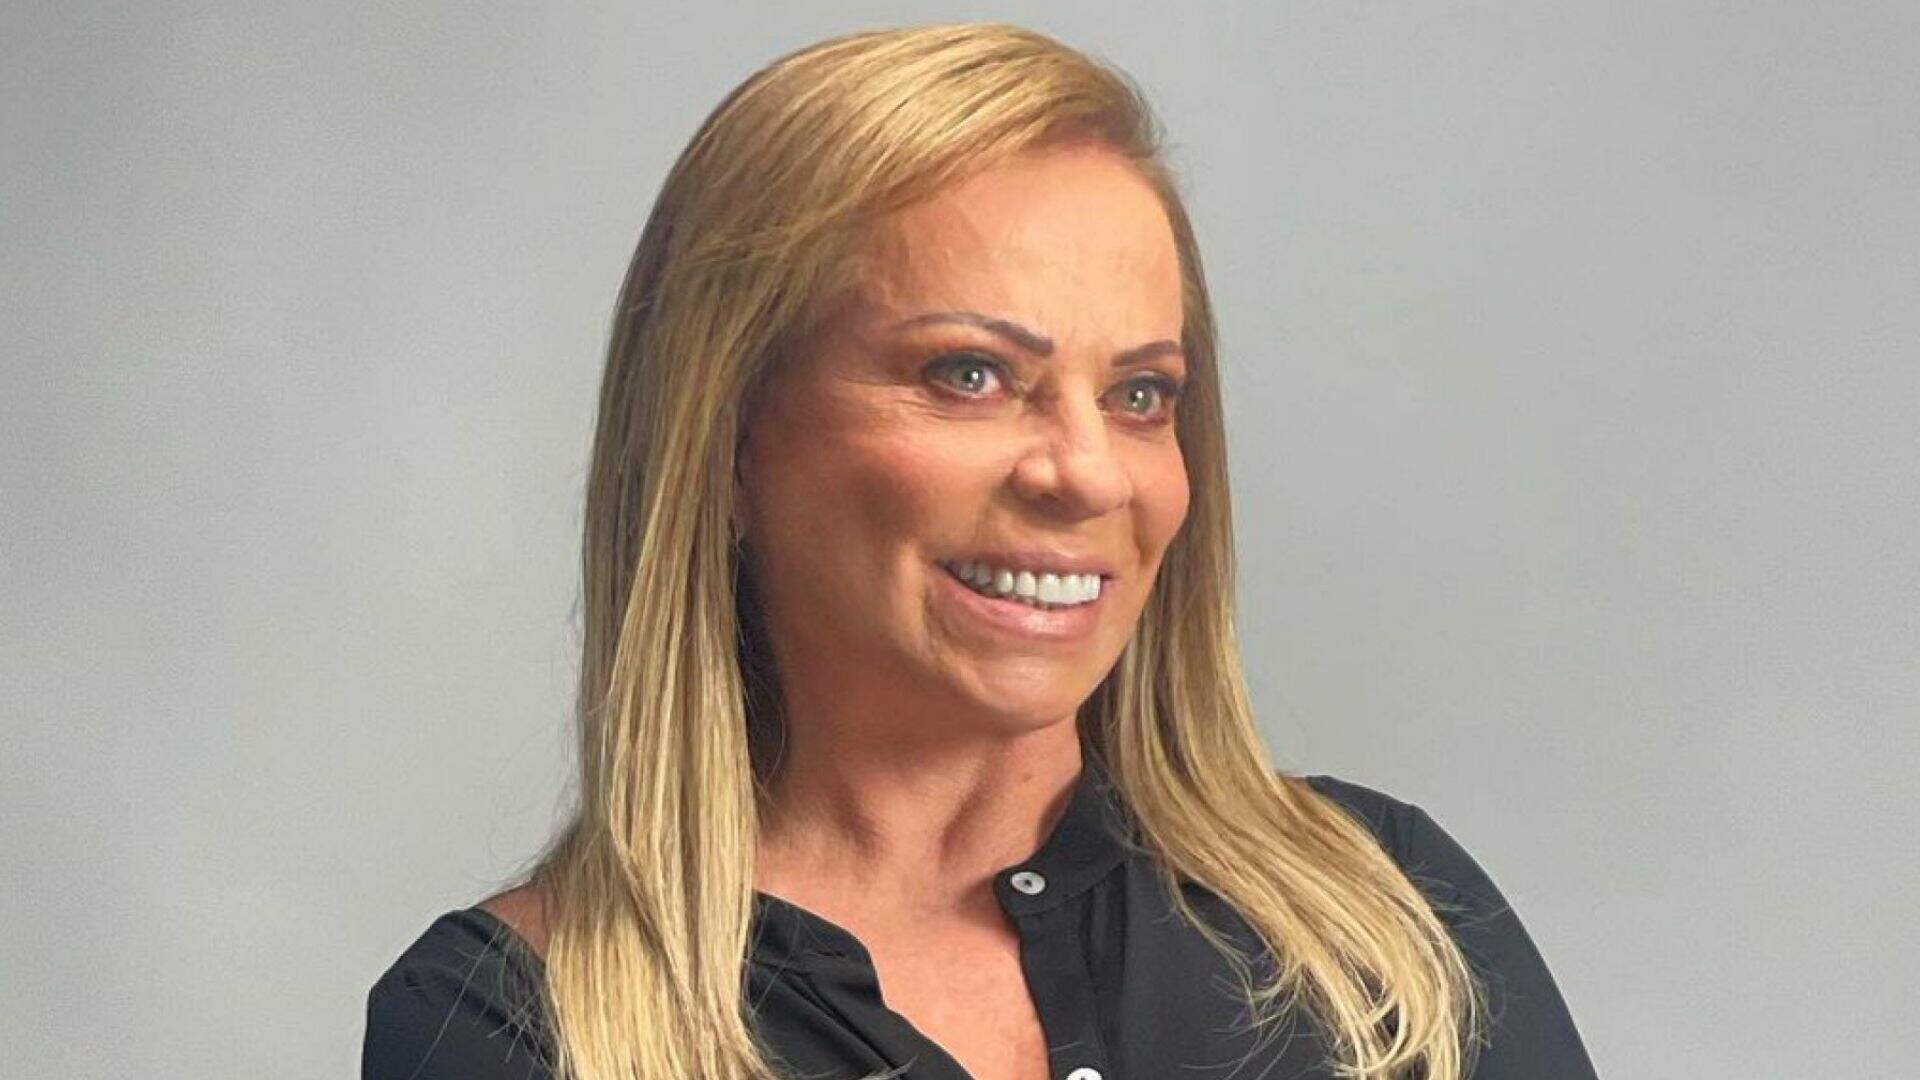 Christina Rocha aproveita inteligência artificial para mostrar foto com biquíni fio-dental e corpo turbinado - Metropolitana FM